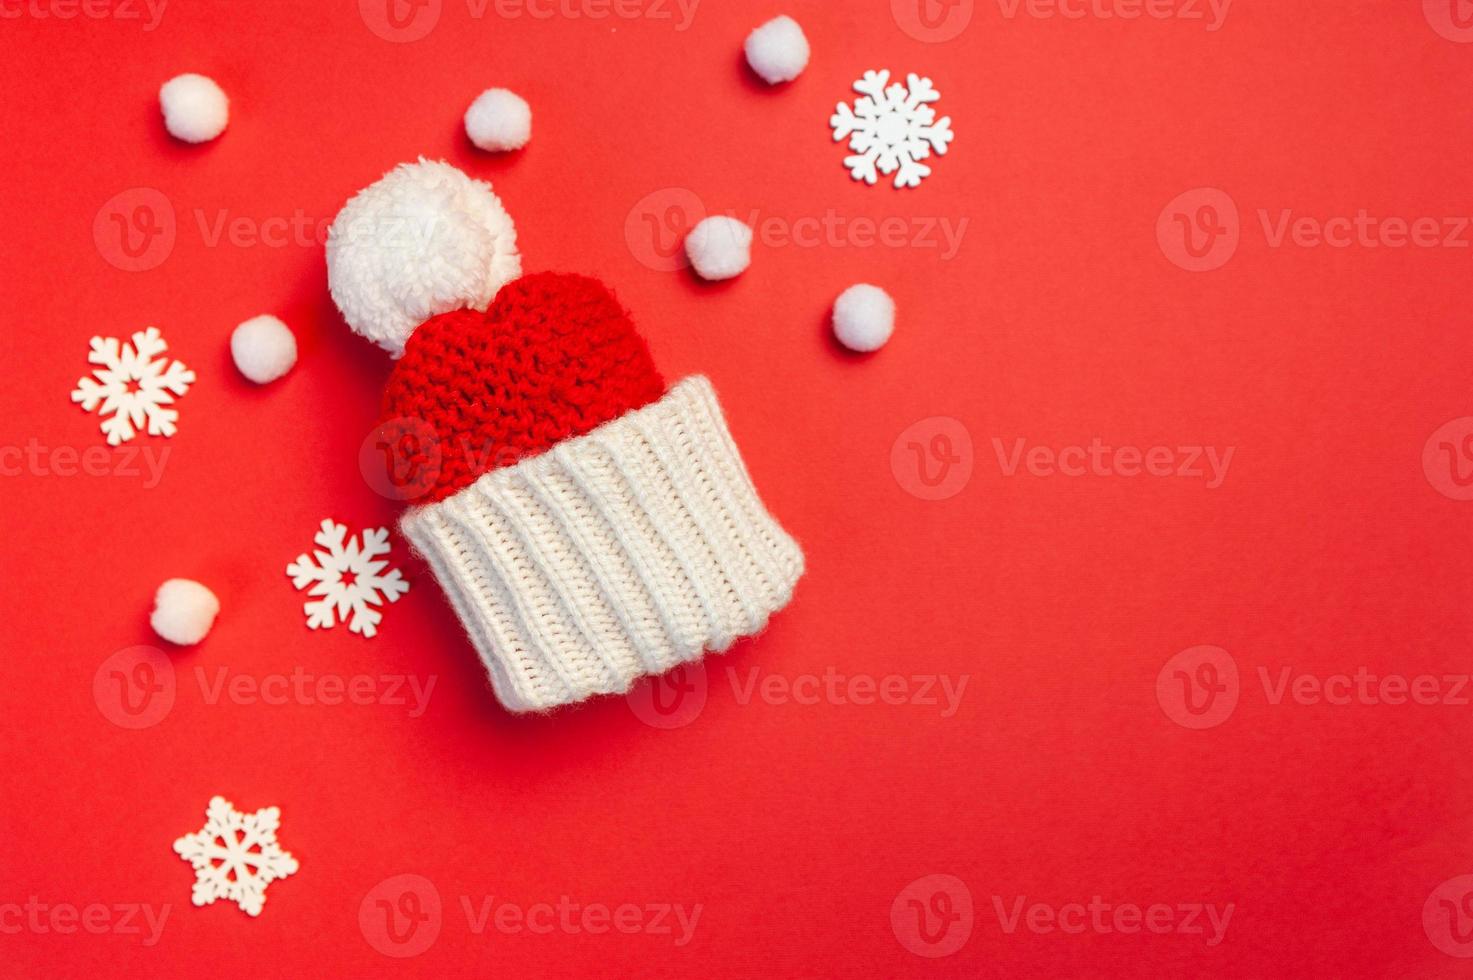 Weihnachtsgrußkarte mit rotem Hut und Schneeflocken auf rotem Hintergrund foto